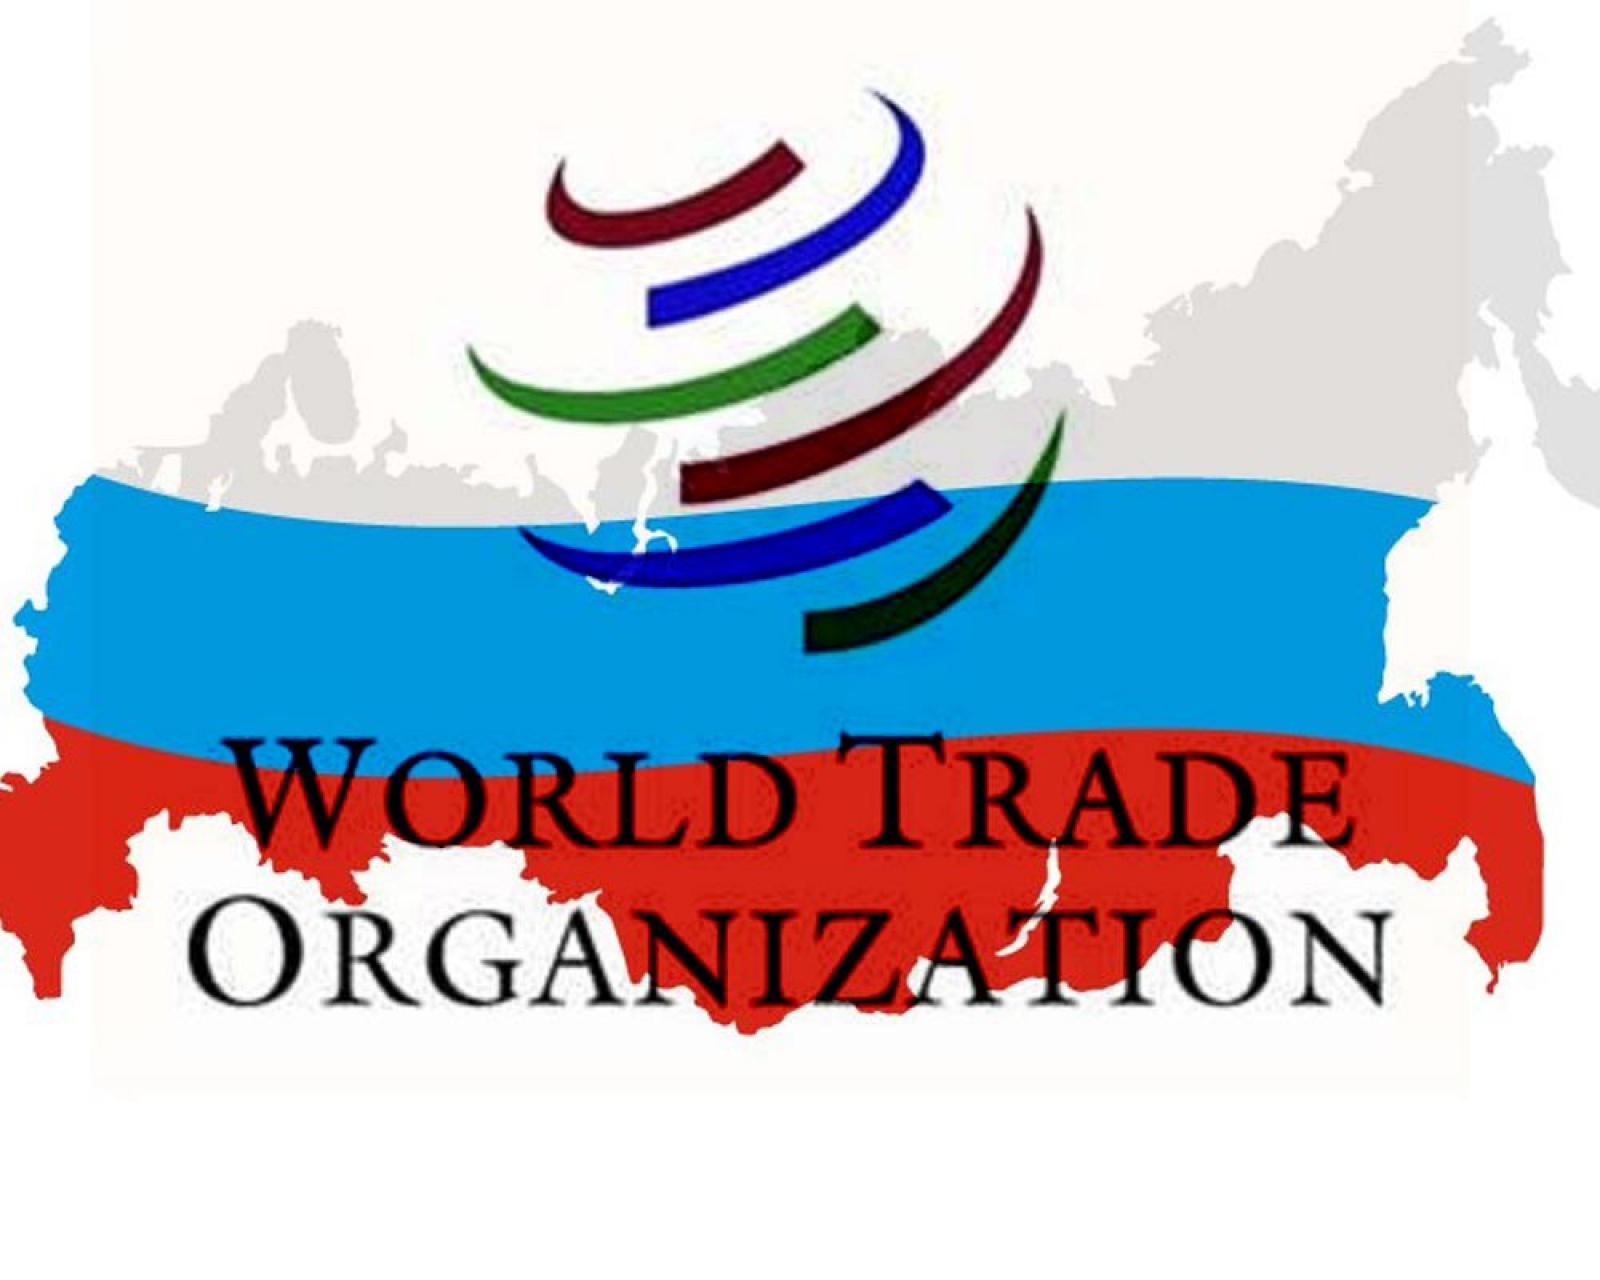 Российские мировые организации